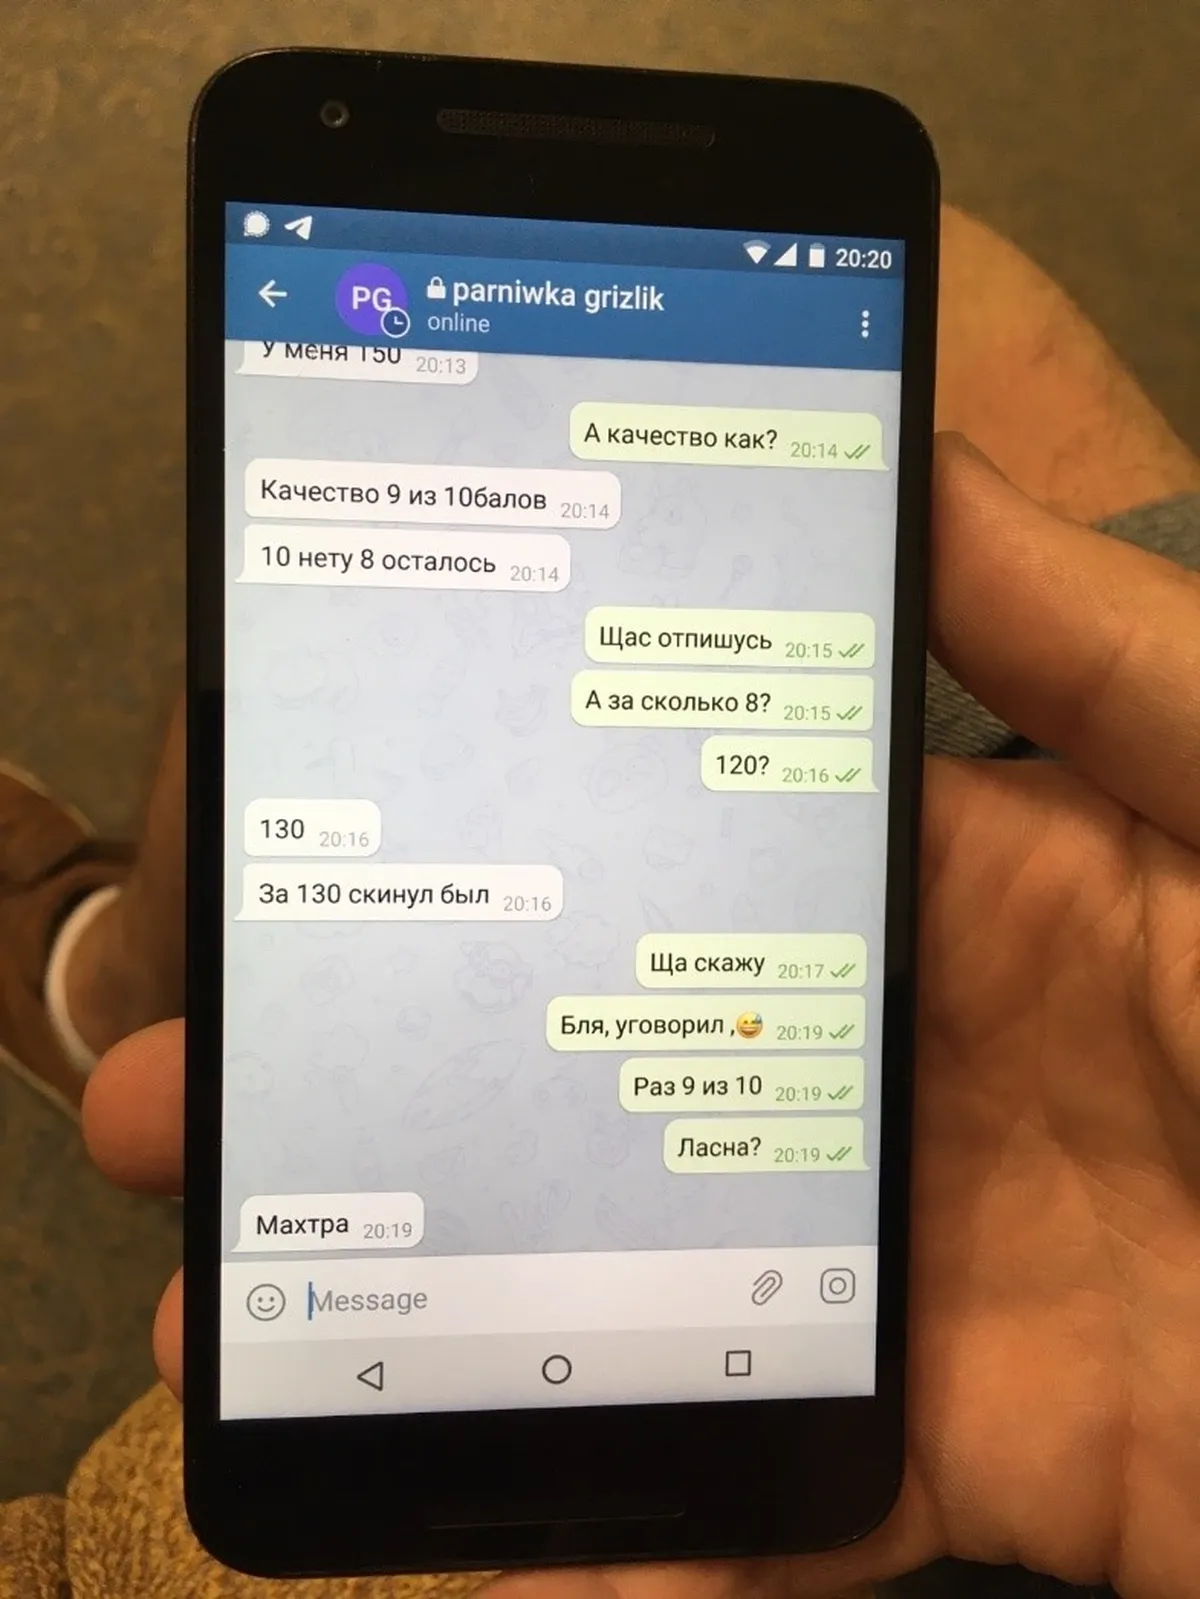 Veel üks pilt Telegrami chatist. Parniwka Grizliku nimega esines Telegramis Aleksandr.